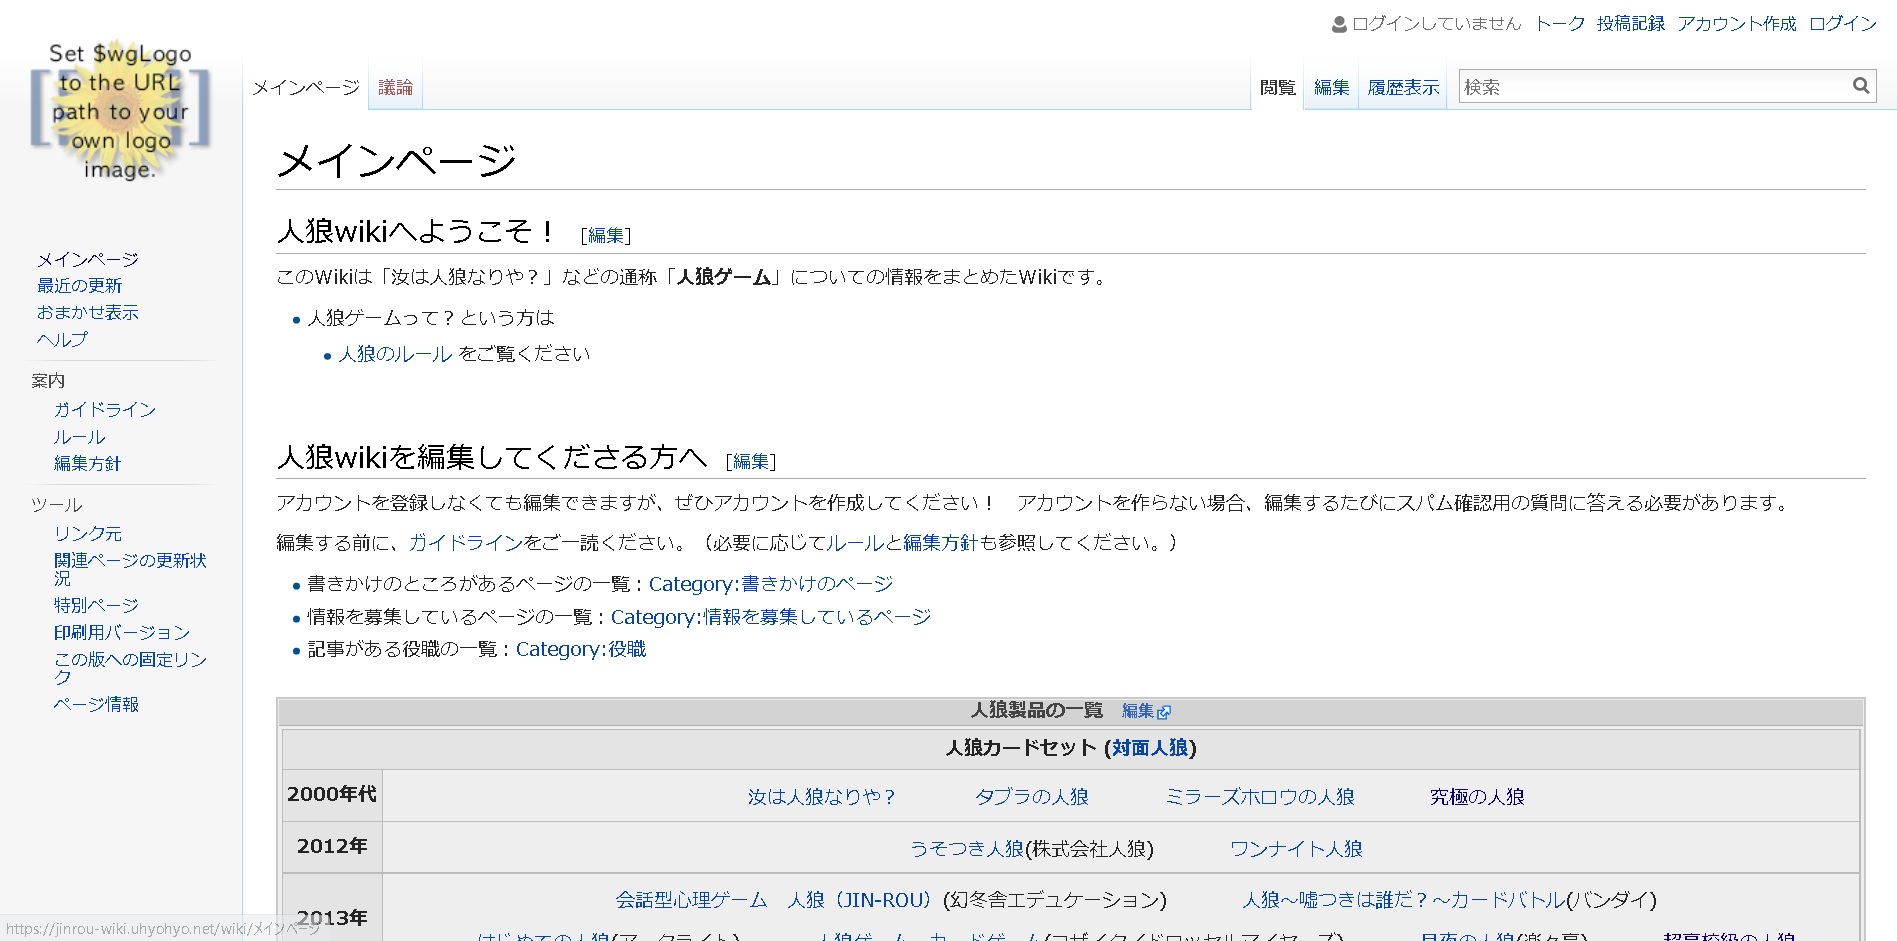 人狼wiki-うひょ-TOPページ.png